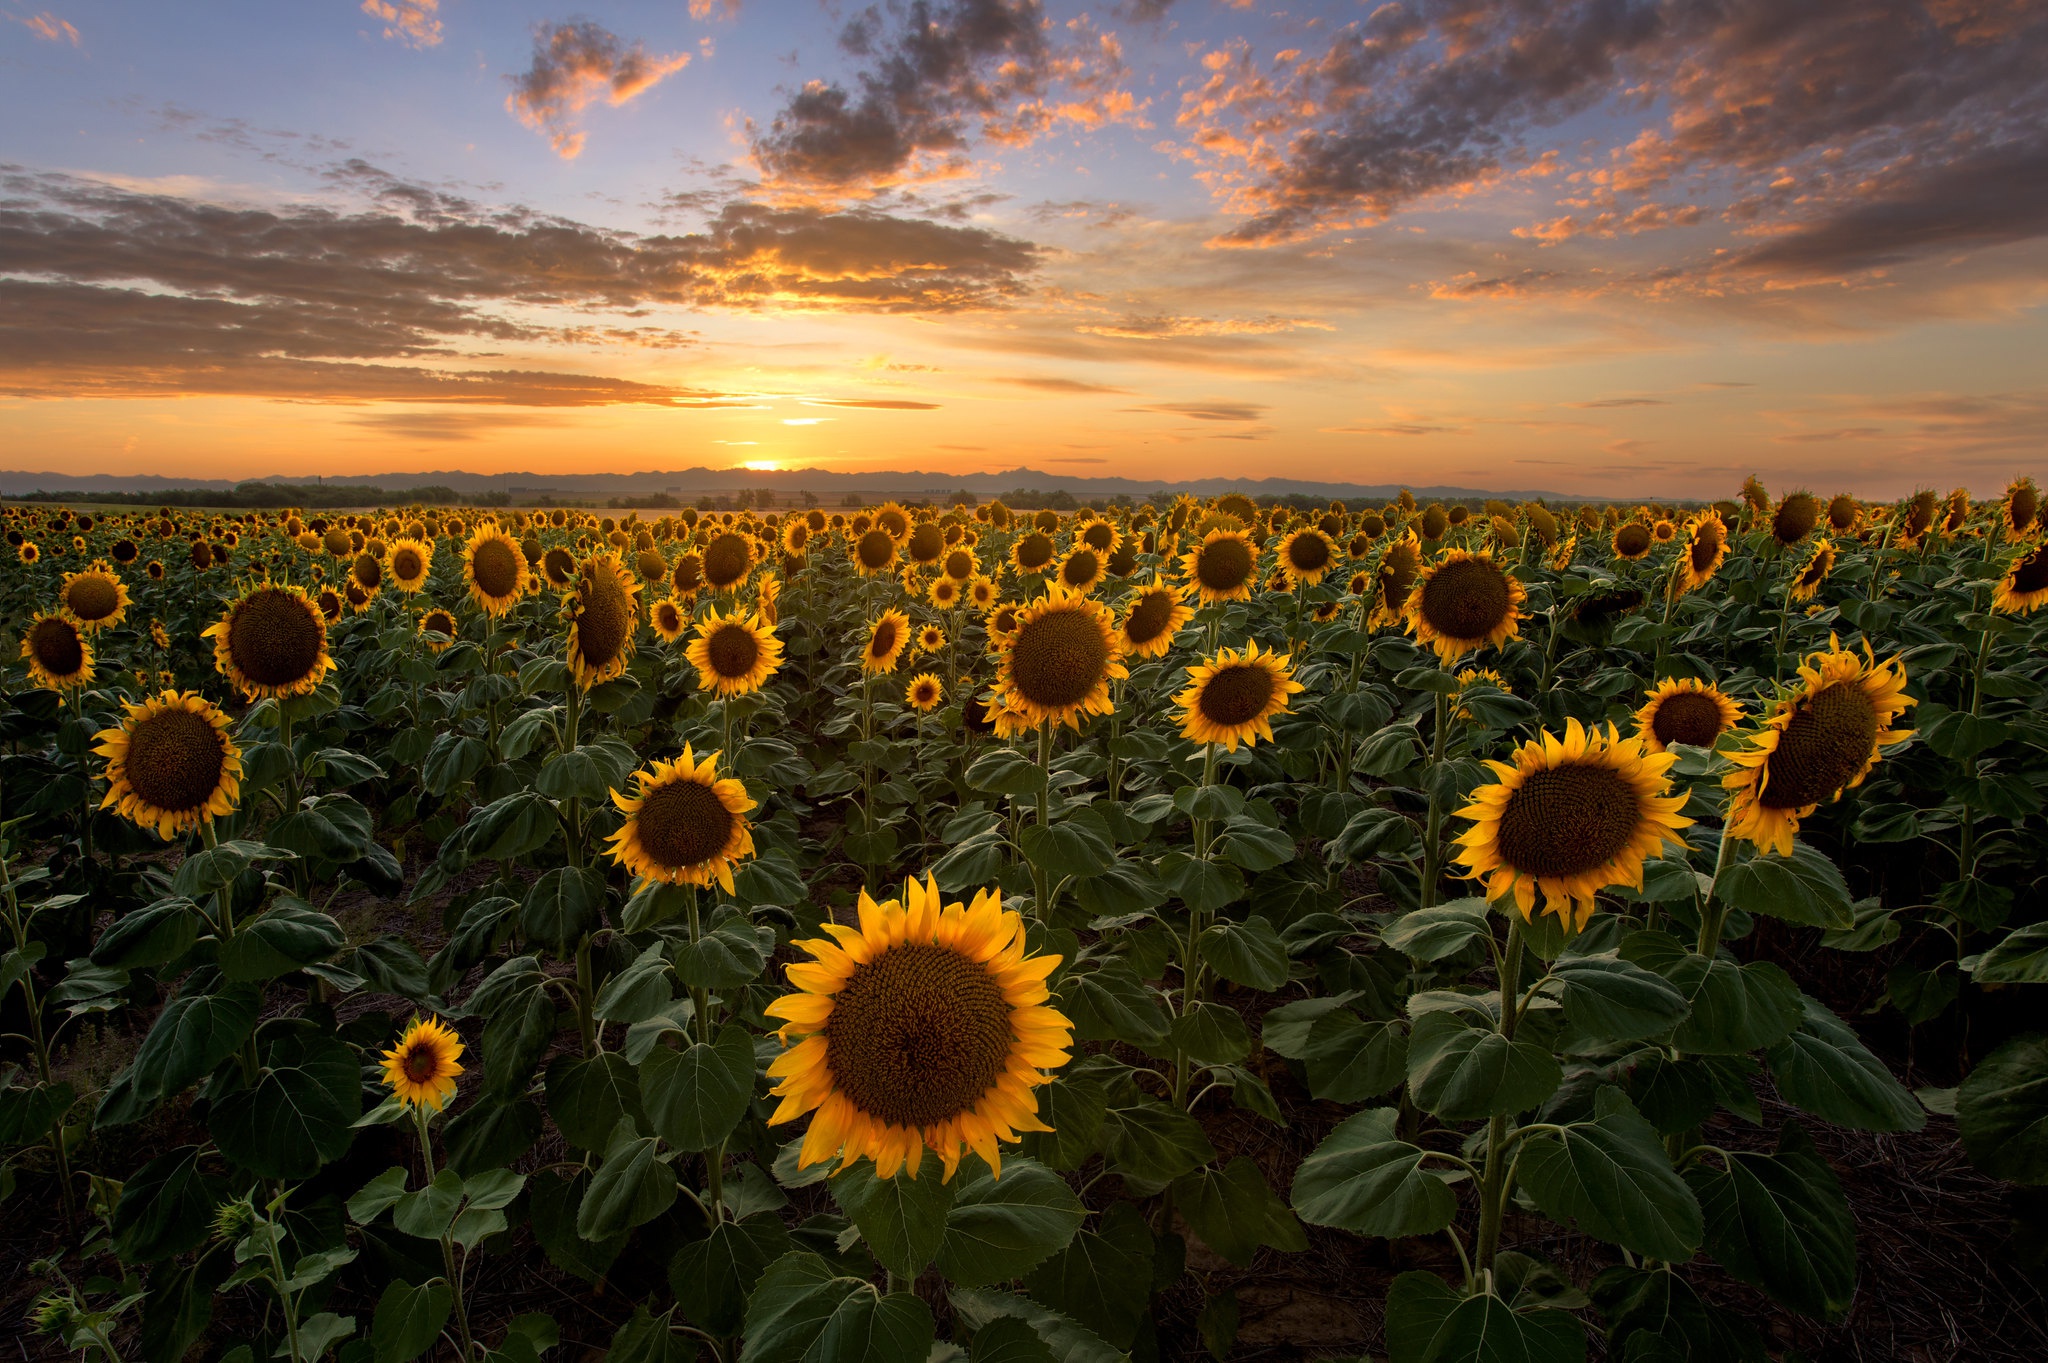 Sunflower HD Wallpaper